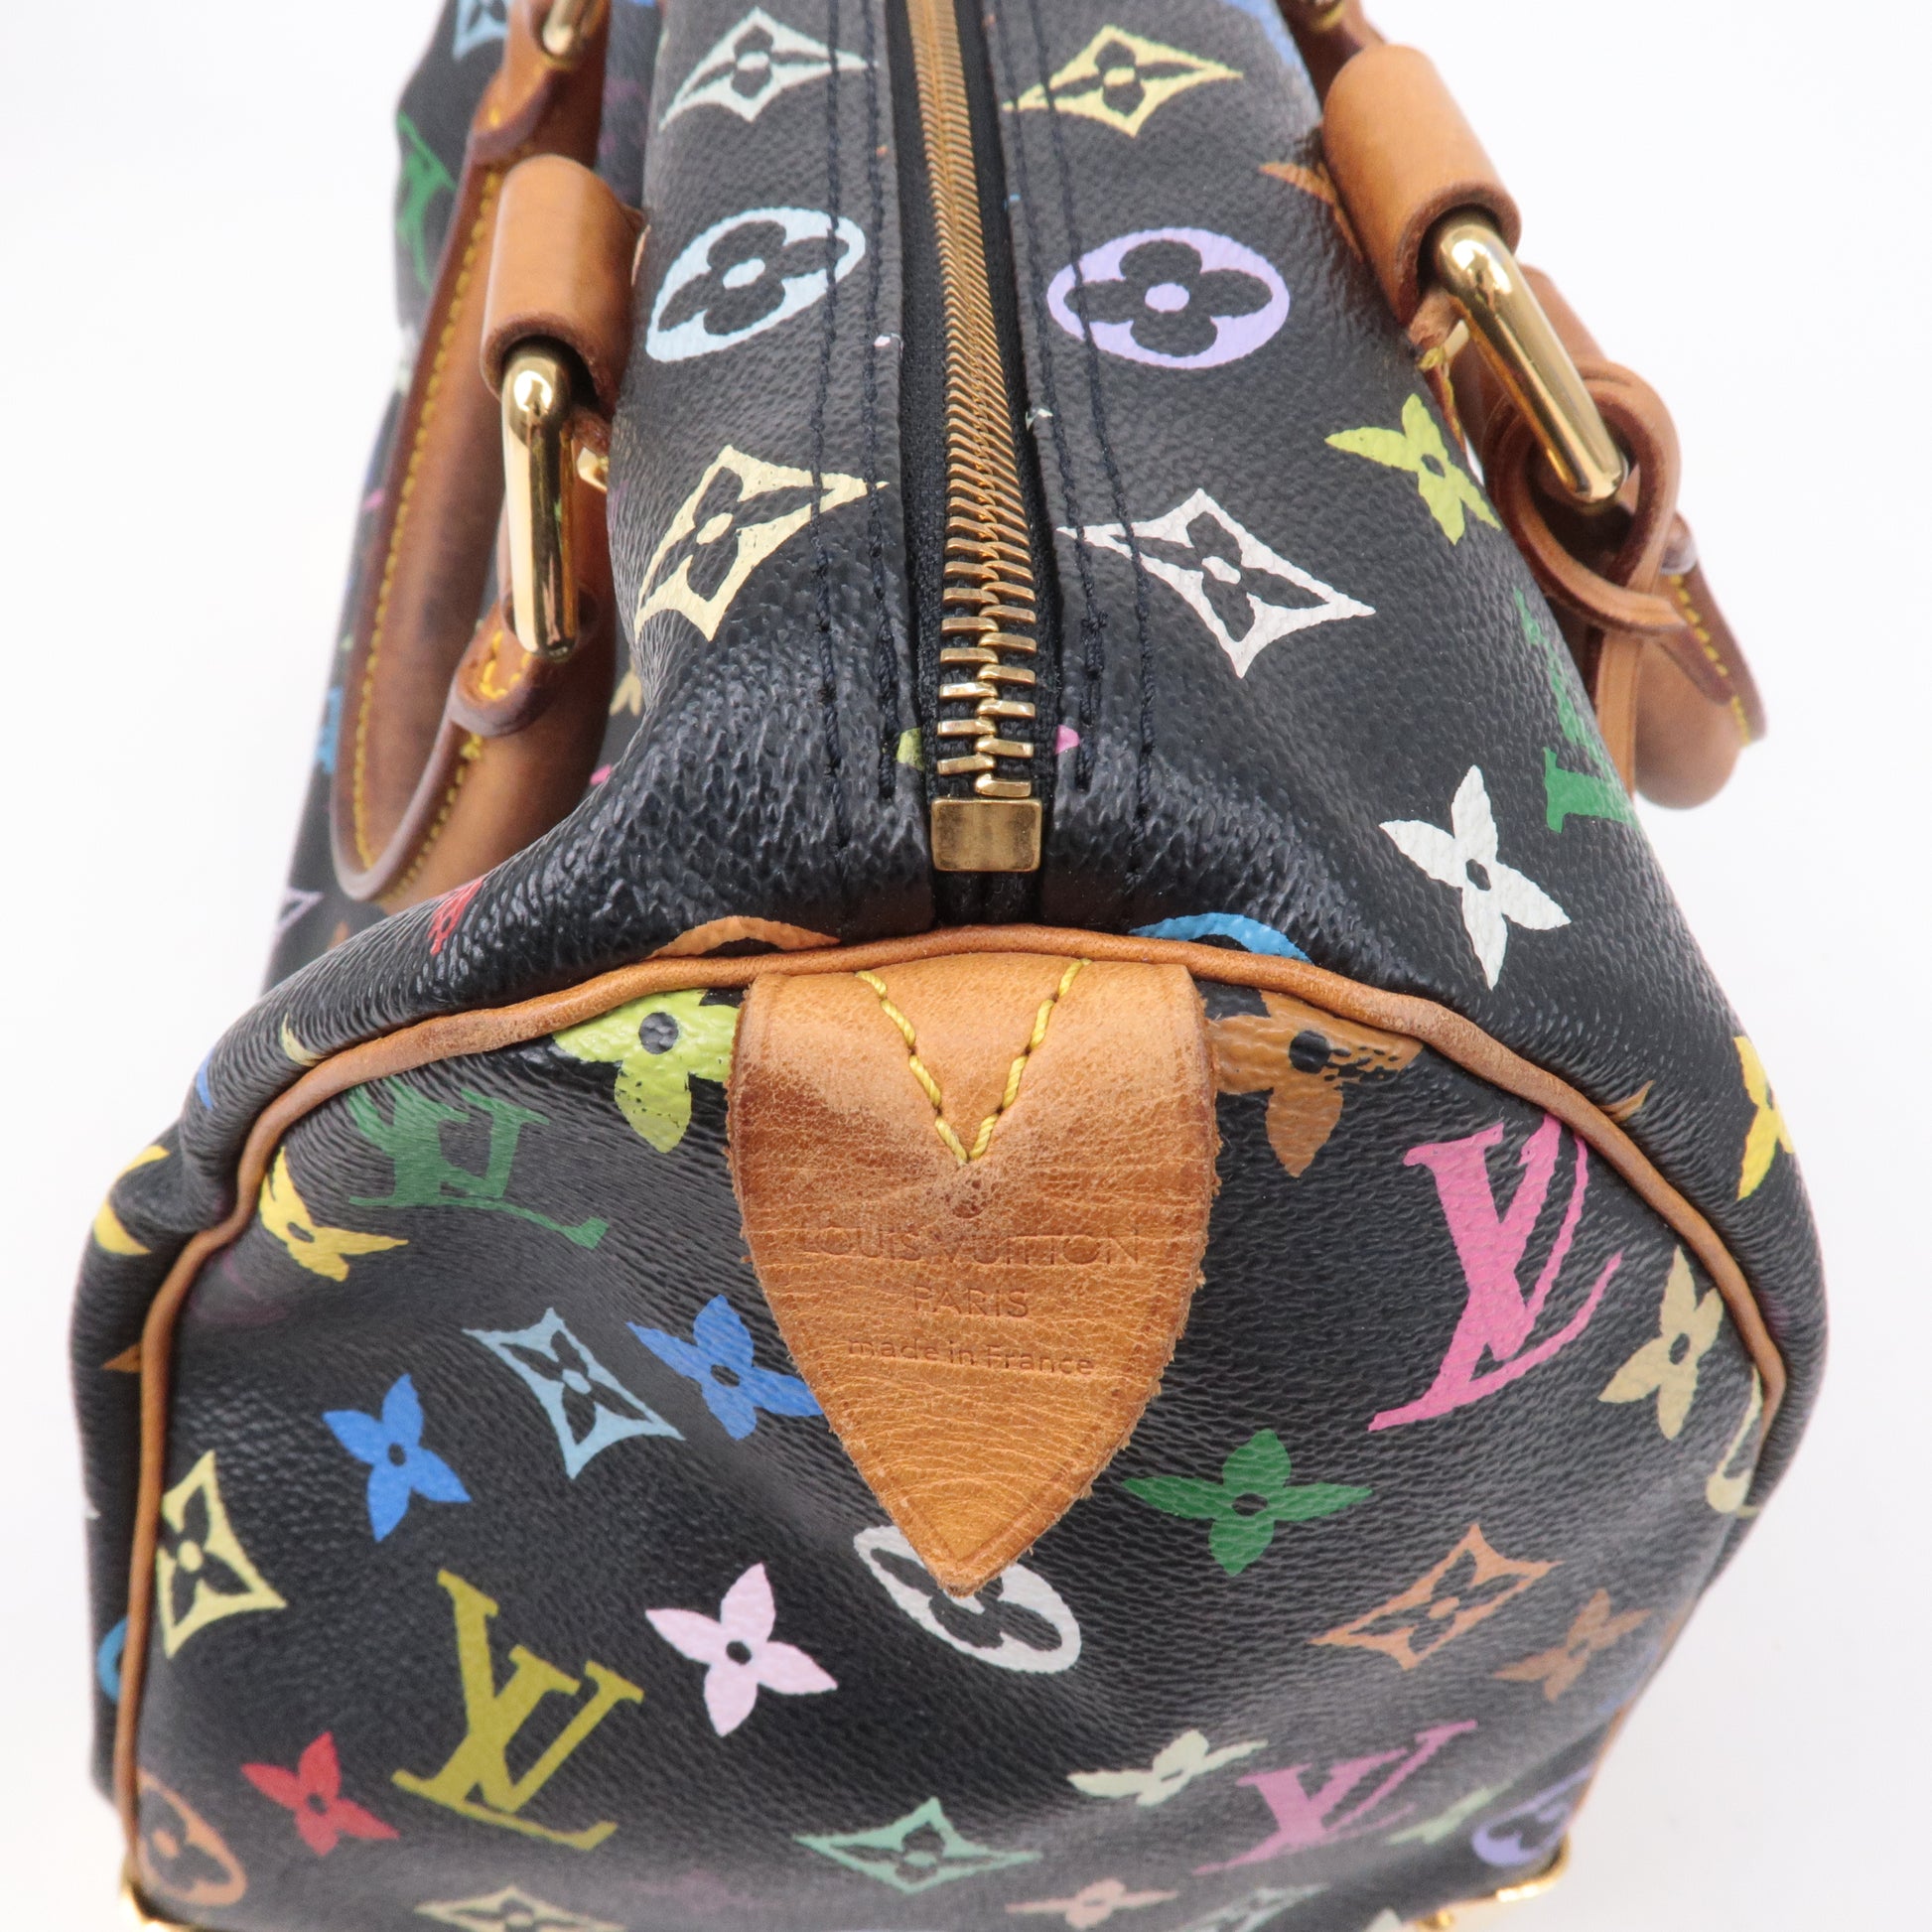 Louis Vuitton - Speedy 30 Multicolor Handbag in France